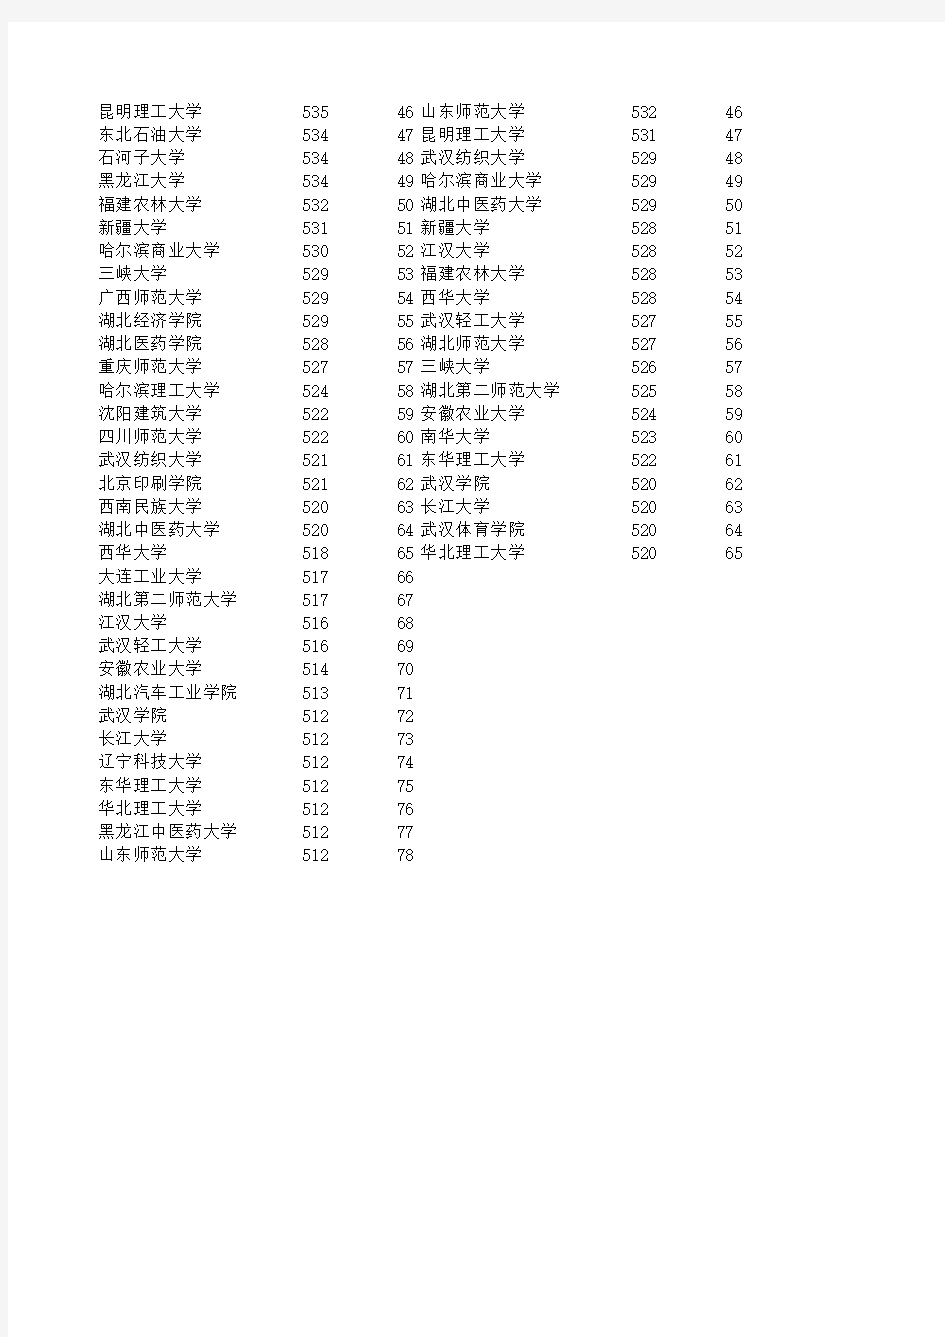 2015-2016湖北省高考一本大学分数投档线(延边大学以后的部分)